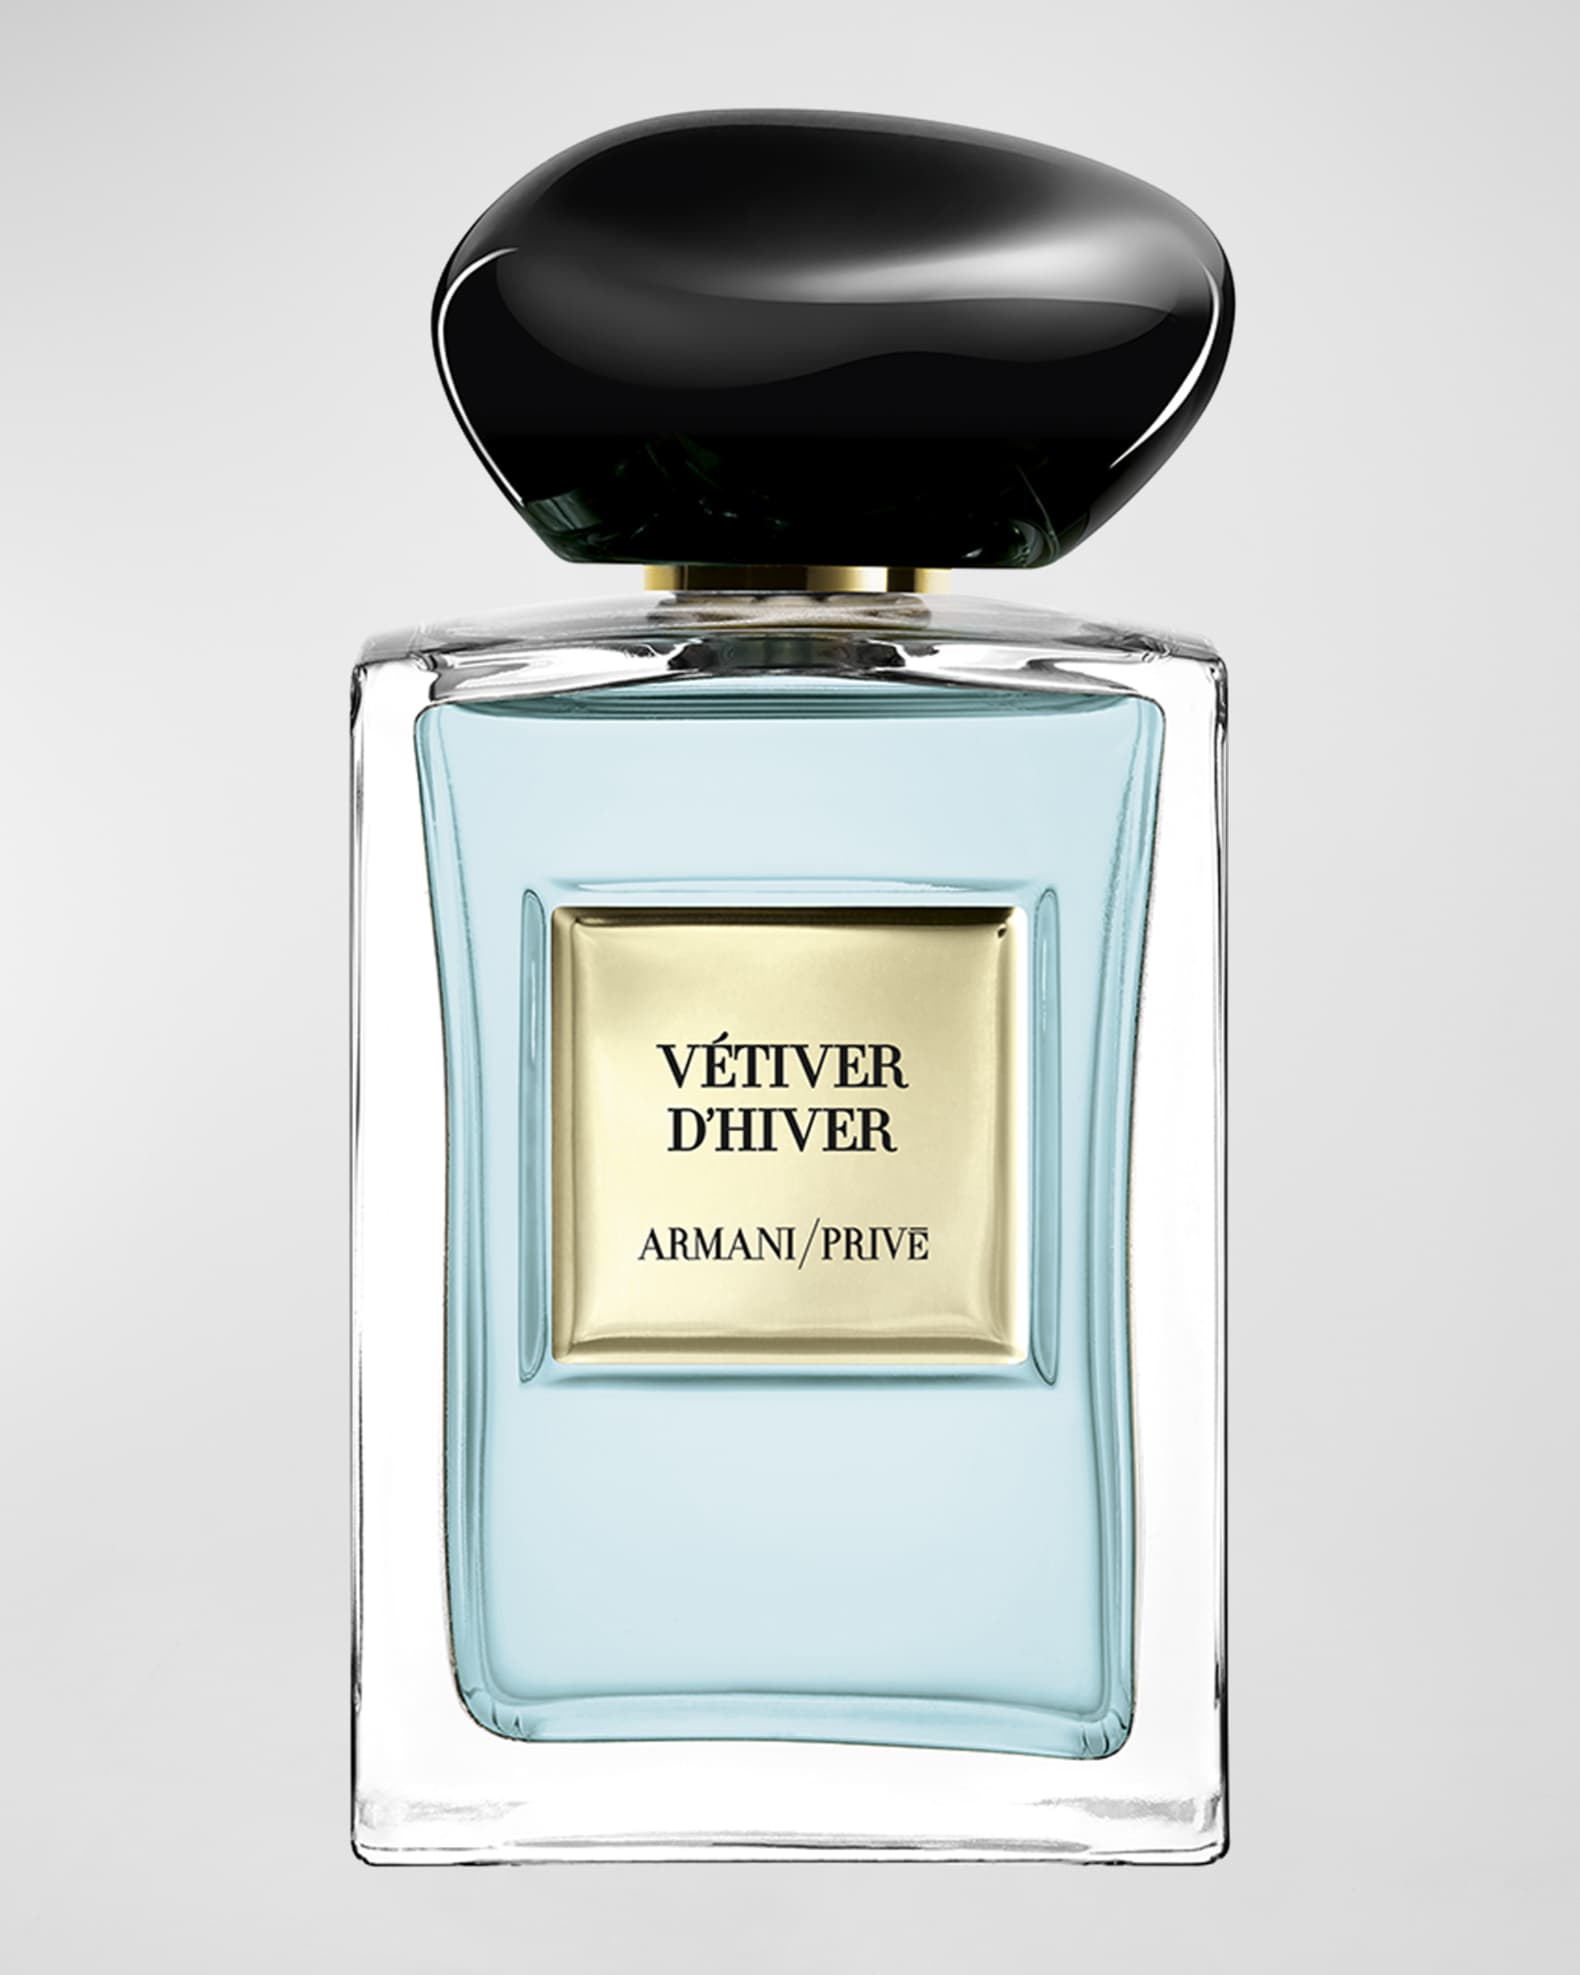 How to recognize a real Louis Vuitton - Fleur d'Hiver